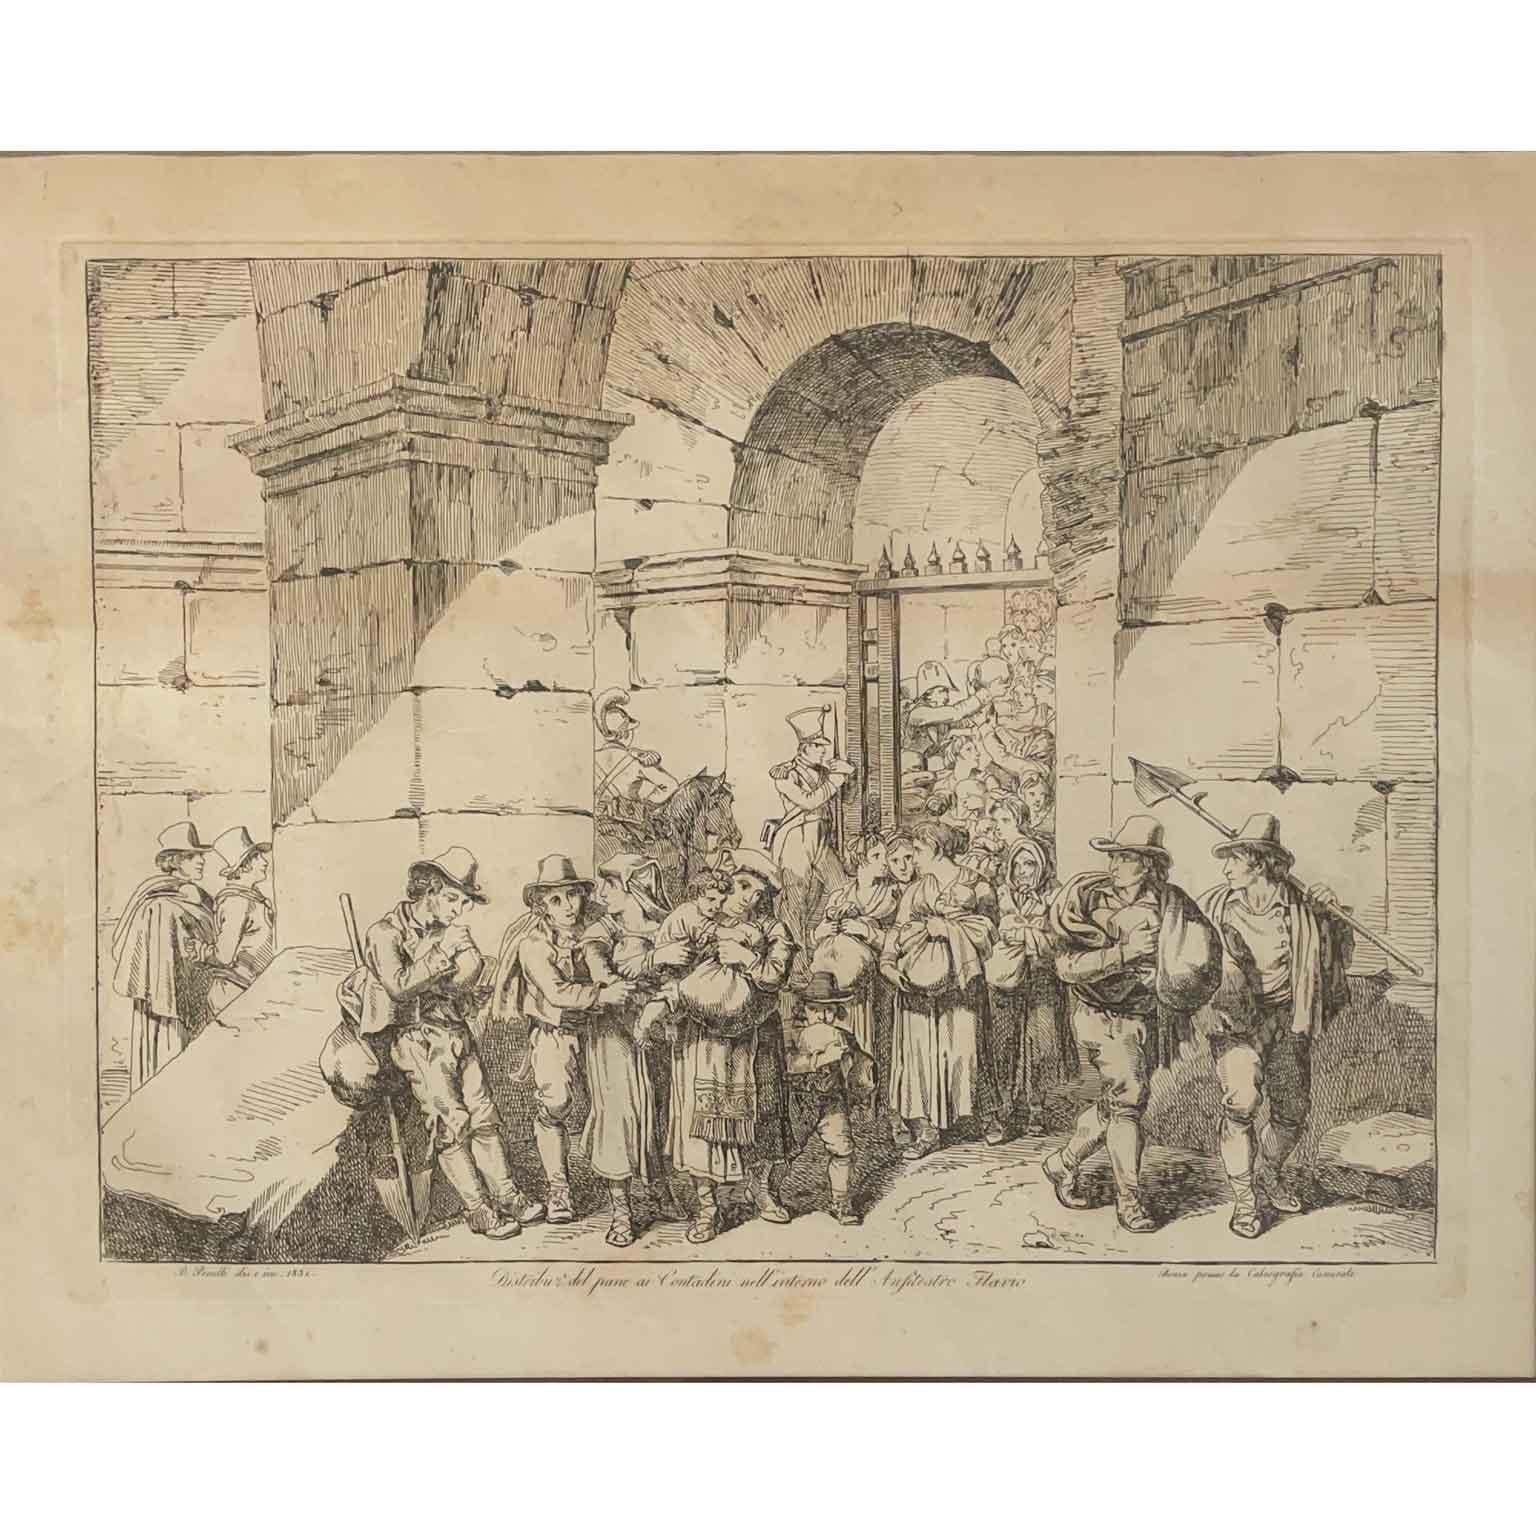 Serie von sechs Drucken mit populären römischen Kostümen von Pinelli Bartolomeo aus dem Jahr 1831 Acquaforti, die Kostüme und Szenen aus dem Volksleben der Stadt Rom wiedergeben. Sie sind in gutem Zustand und werden in einem braunen Passepartout mit